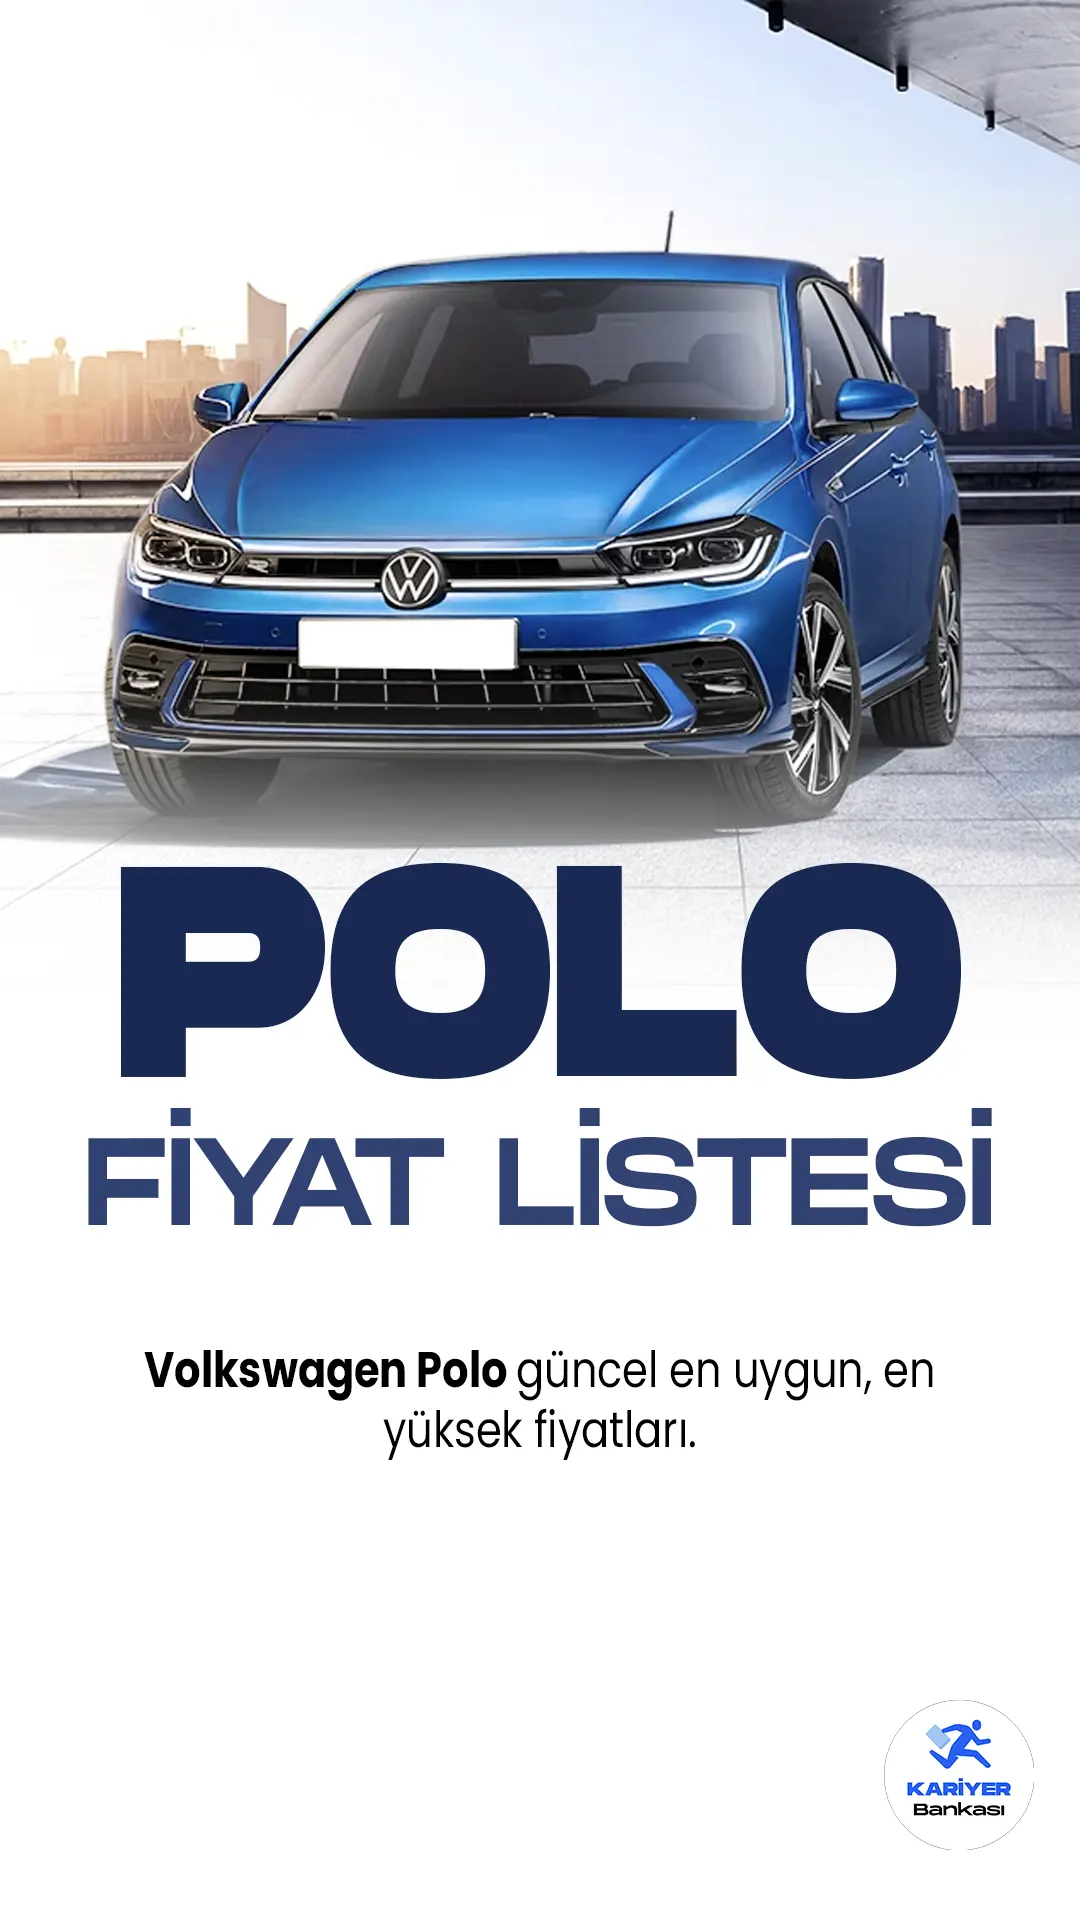 Volkswagen Polo Mayıs 2023 Fiyat Listesi Yayımlandı.Volkswagen Polo, şık tasarımı ve güçlü performansıyla dikkat çeken bir araç modelidir. Son teknoloji özellikleriyle donatılan Polo, hem iç hem de dış mekanında kalite ve konfor sunar. Geniş iç hacmi sayesinde yolcularına ferah bir sürüş deneyimi yaşatırken, çevikliğiyle de şehir içi trafiğinde rahatlıkla manevra yapabilme imkanı sağlar.